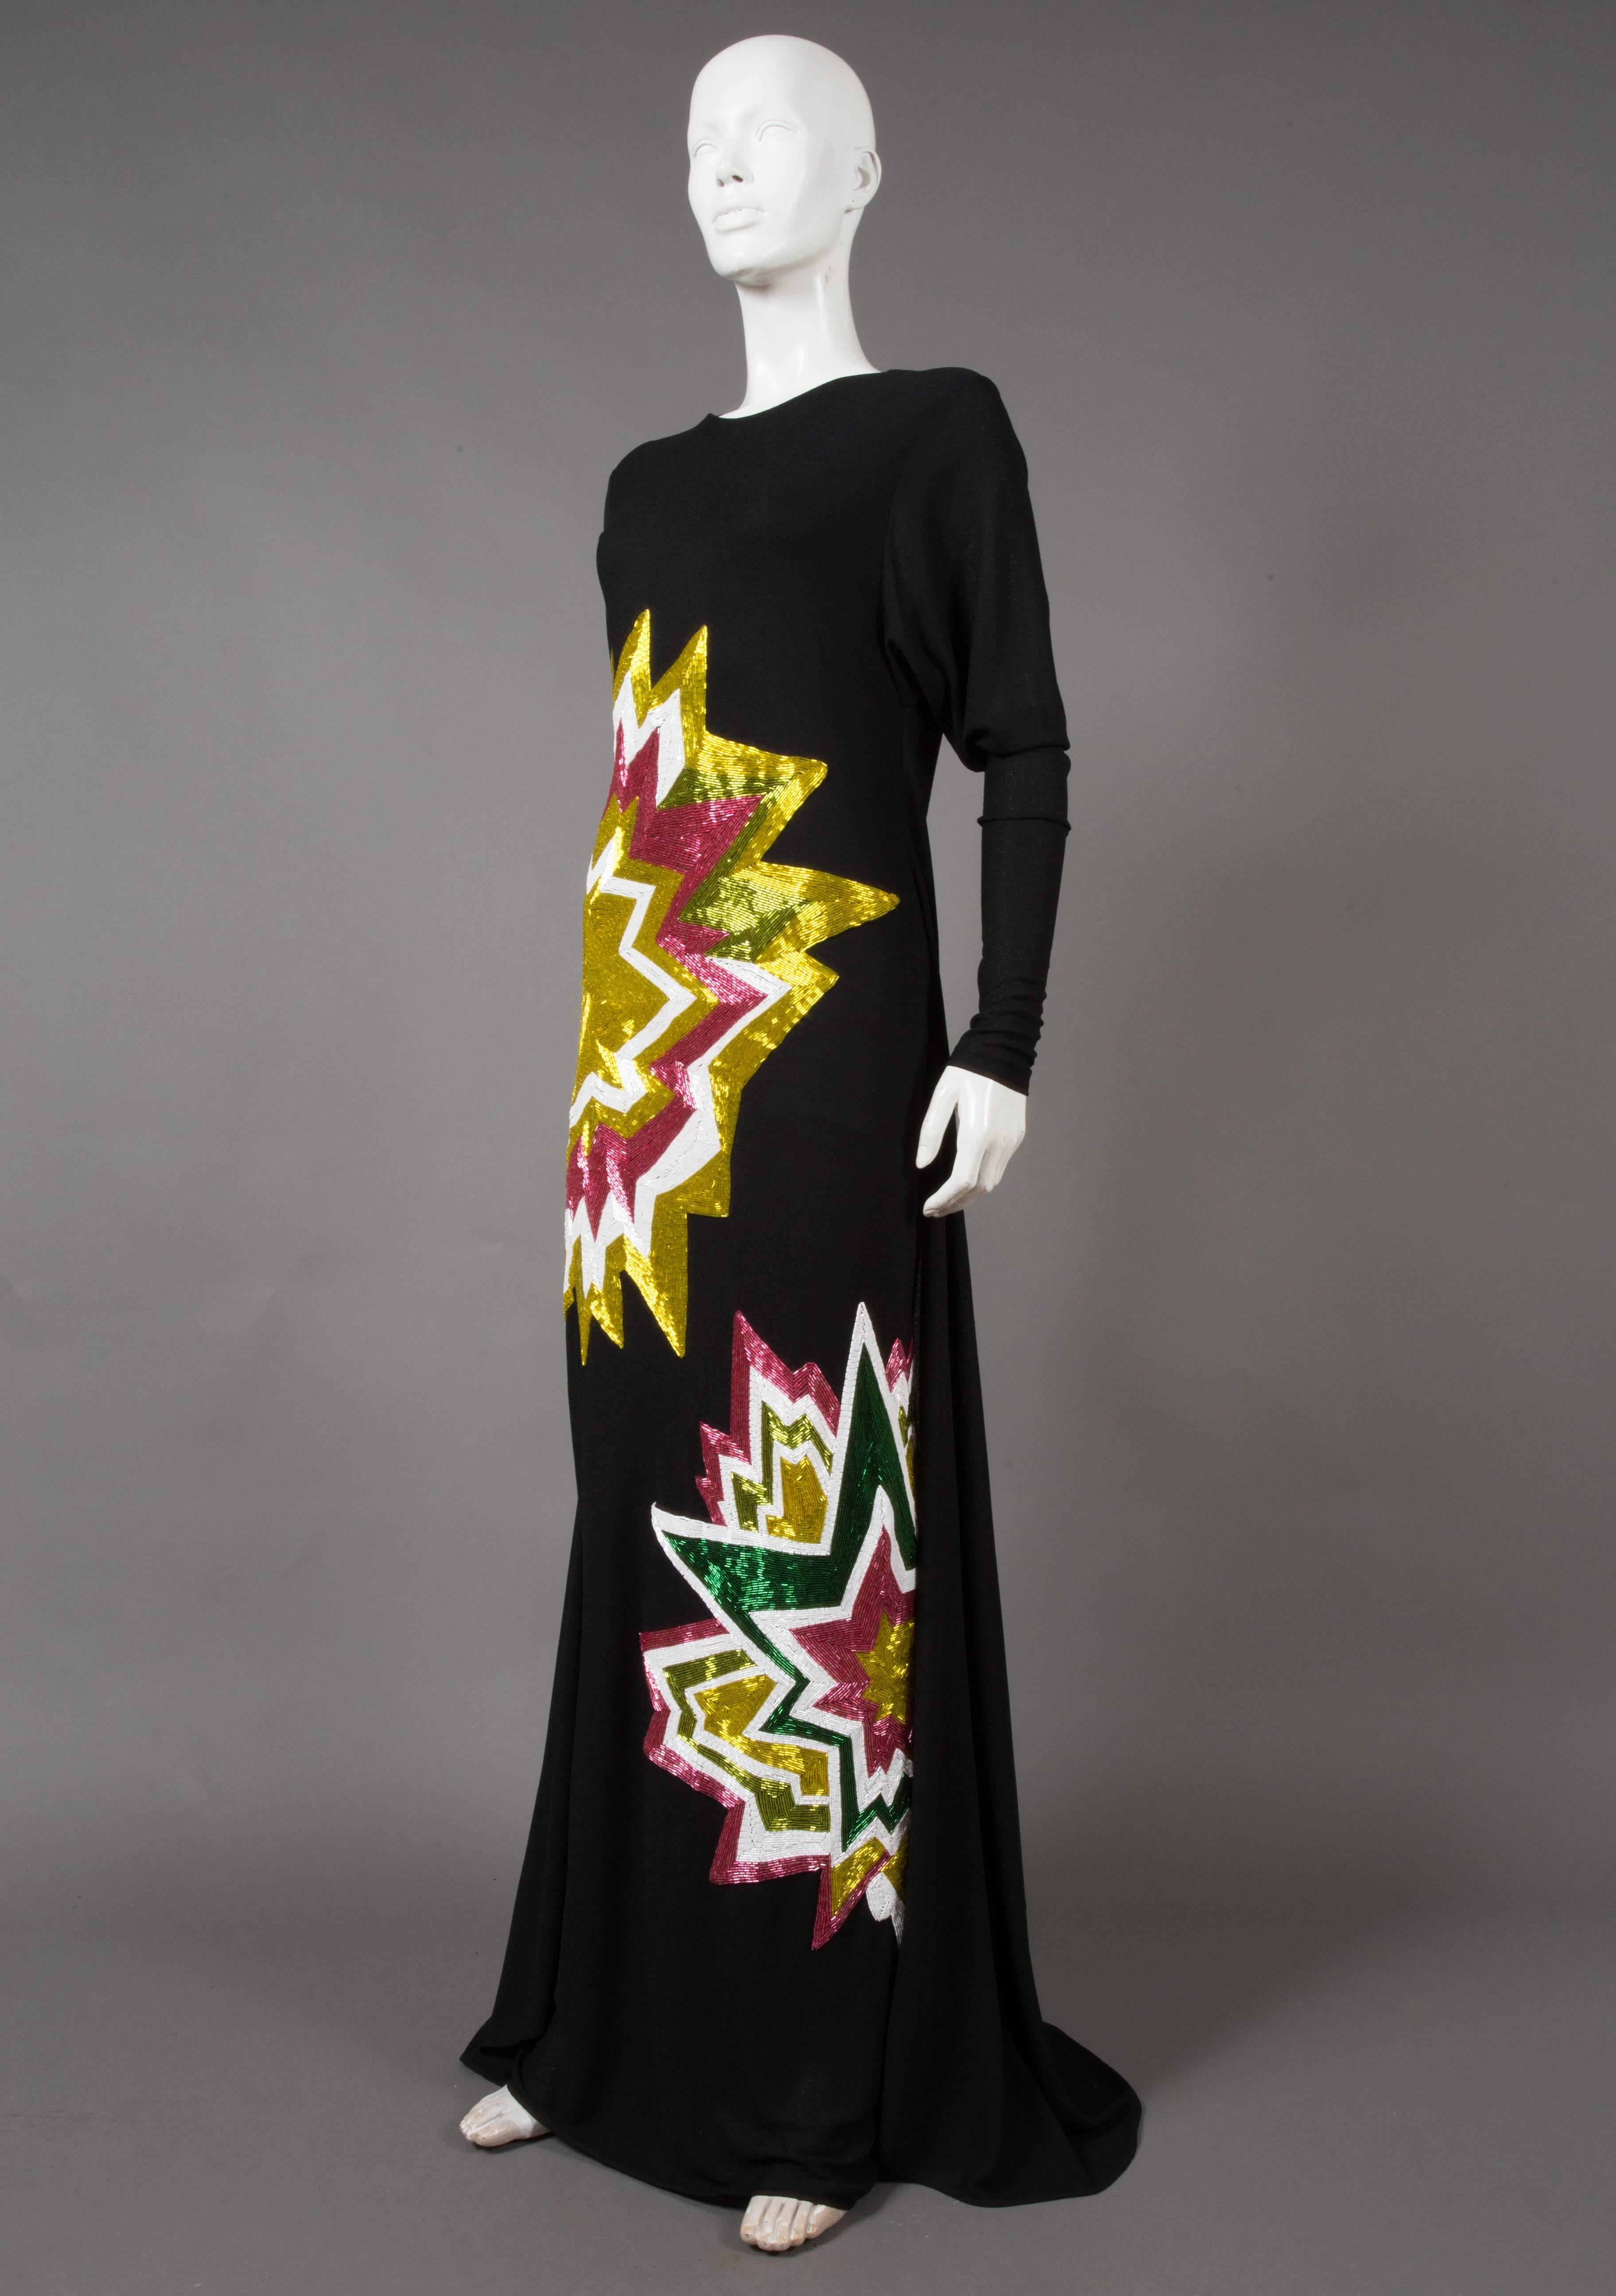 Présentation d'une robe de soirée TOM FORD exquise et très recherchée de la collection automne-hiver 2013, un véritable bijou qui a capté l'attention du monde de la mode. Cette robe témoigne de l'art inégalé de la créatrice et est synonyme de luxe